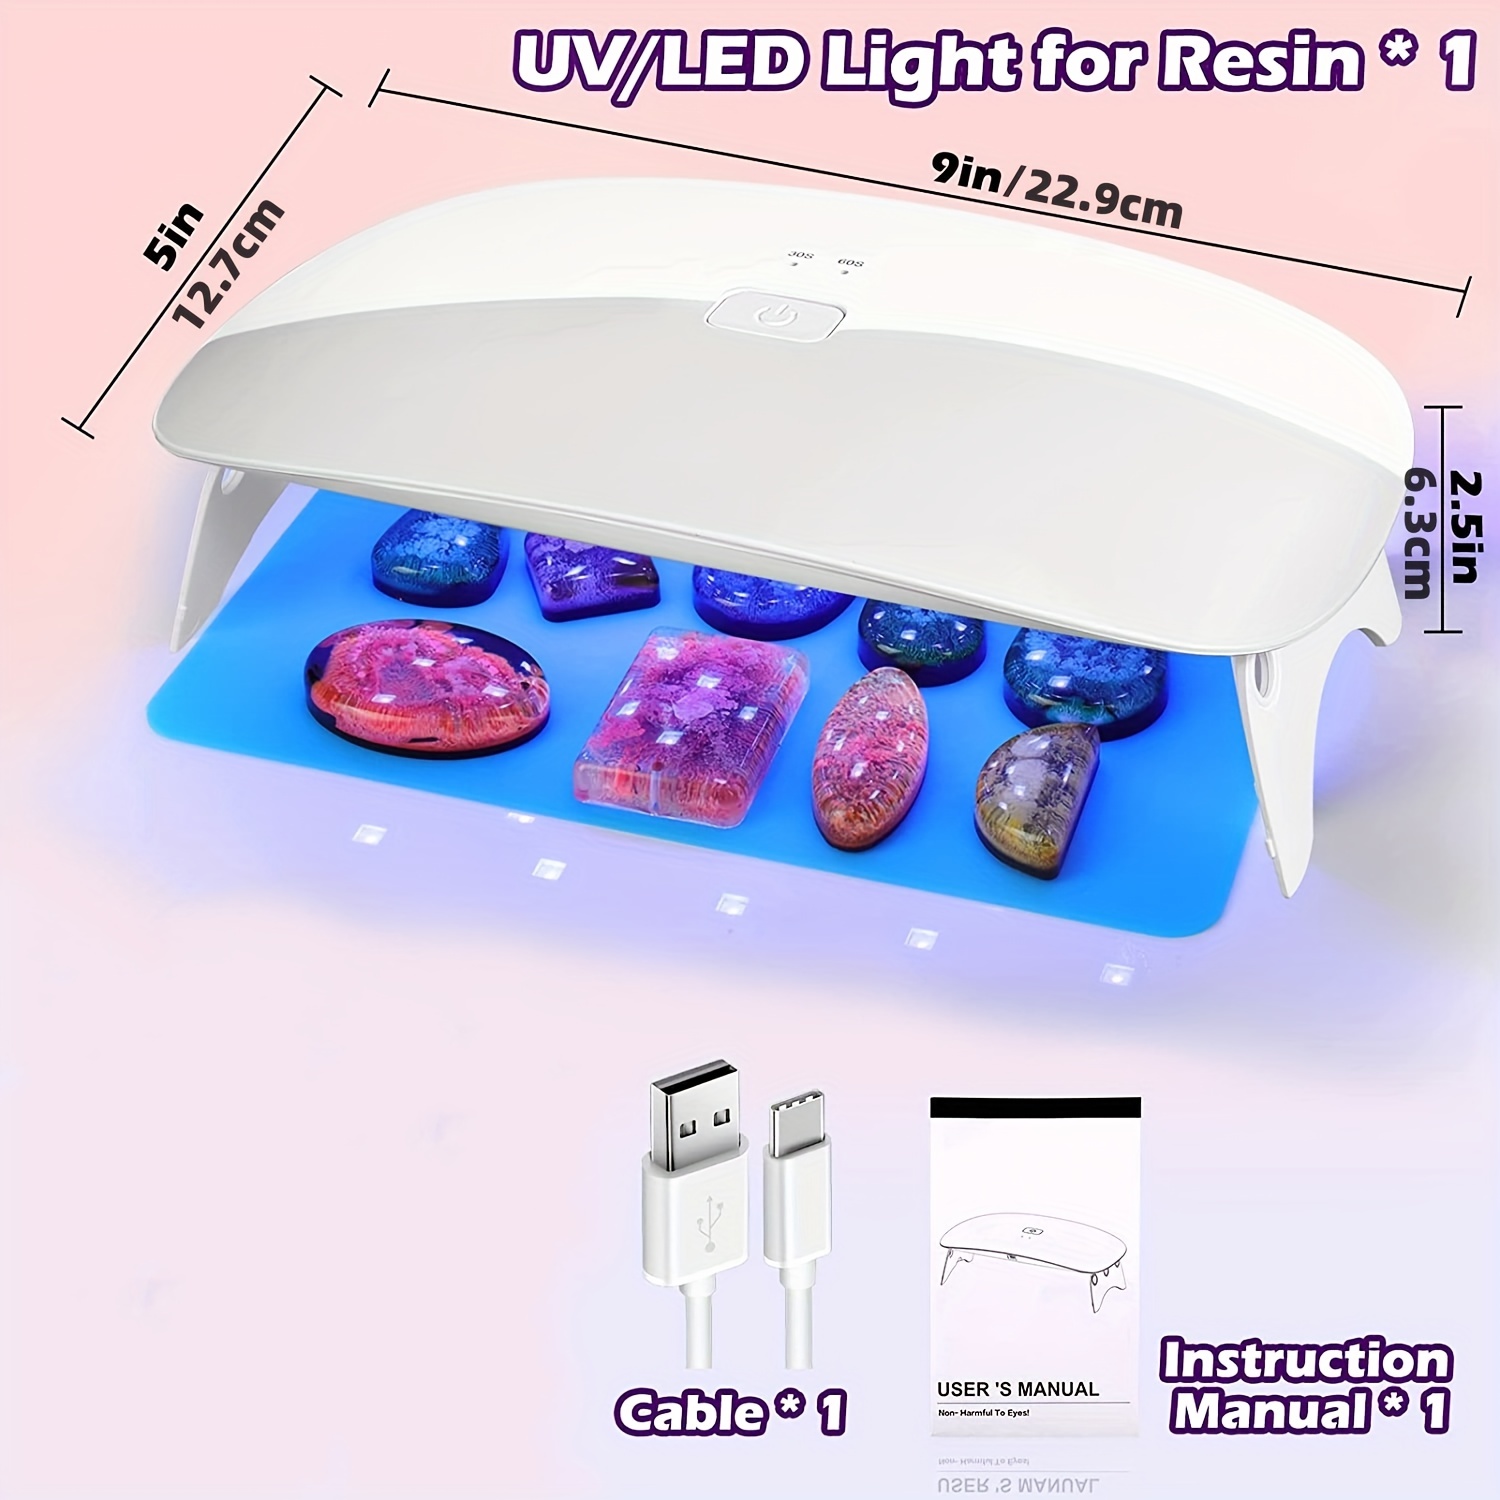  2 Pack UV Light For Resin, Large Size Dual Wavelength UV  Resin Light And Portable UV Lamp For Resin Curing, UV Resin Kit, Resin  Supplies For UV Resin, Jewelry Making